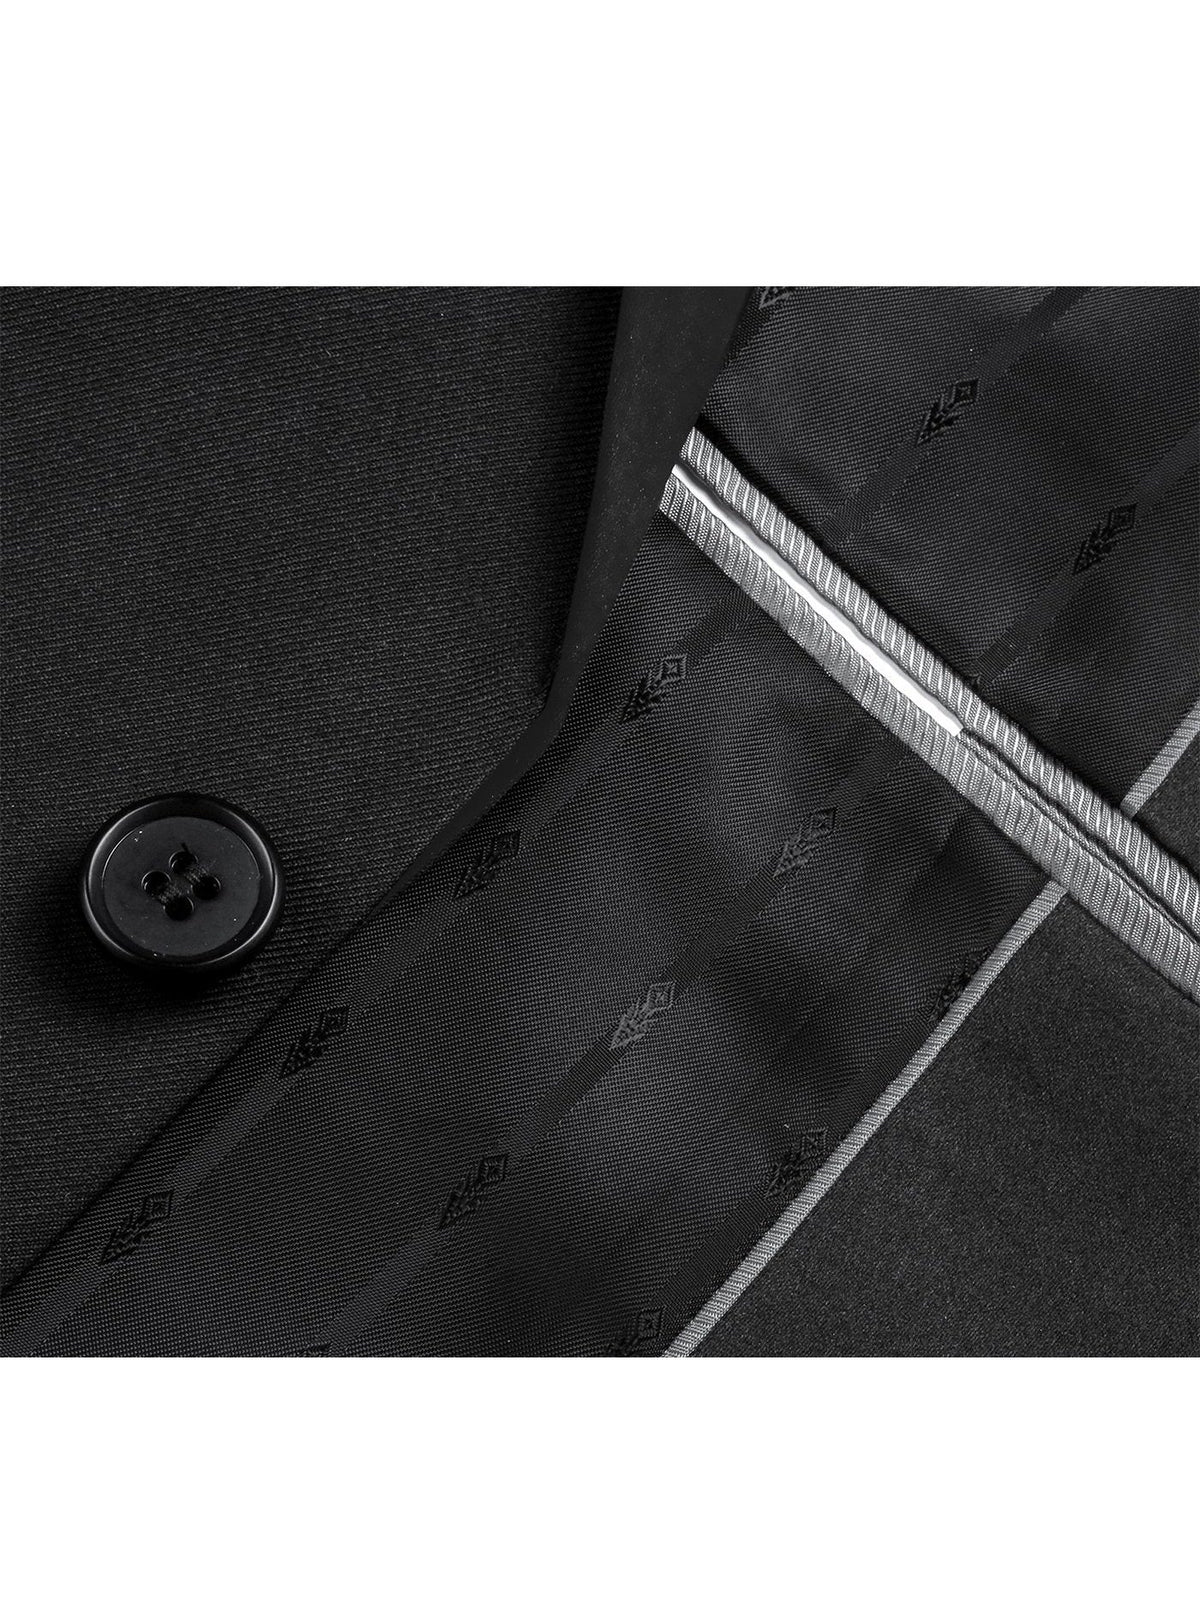 Men&#39;s Slim Fit 2-Piece Shawl Lapel Tuxedo Suit